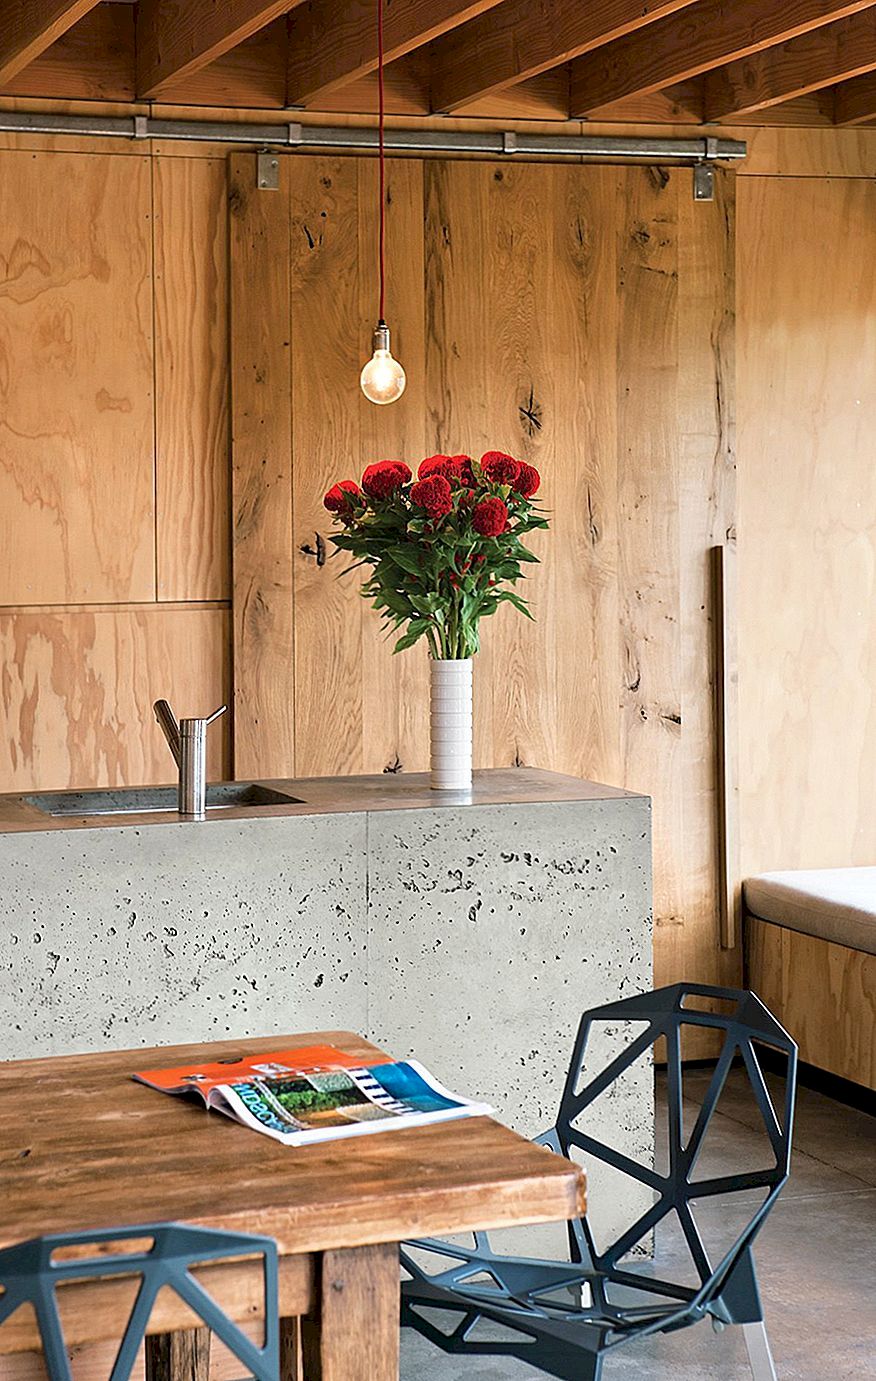 Cement-werkbladen - de knooppunten van hedendaags minimalisme